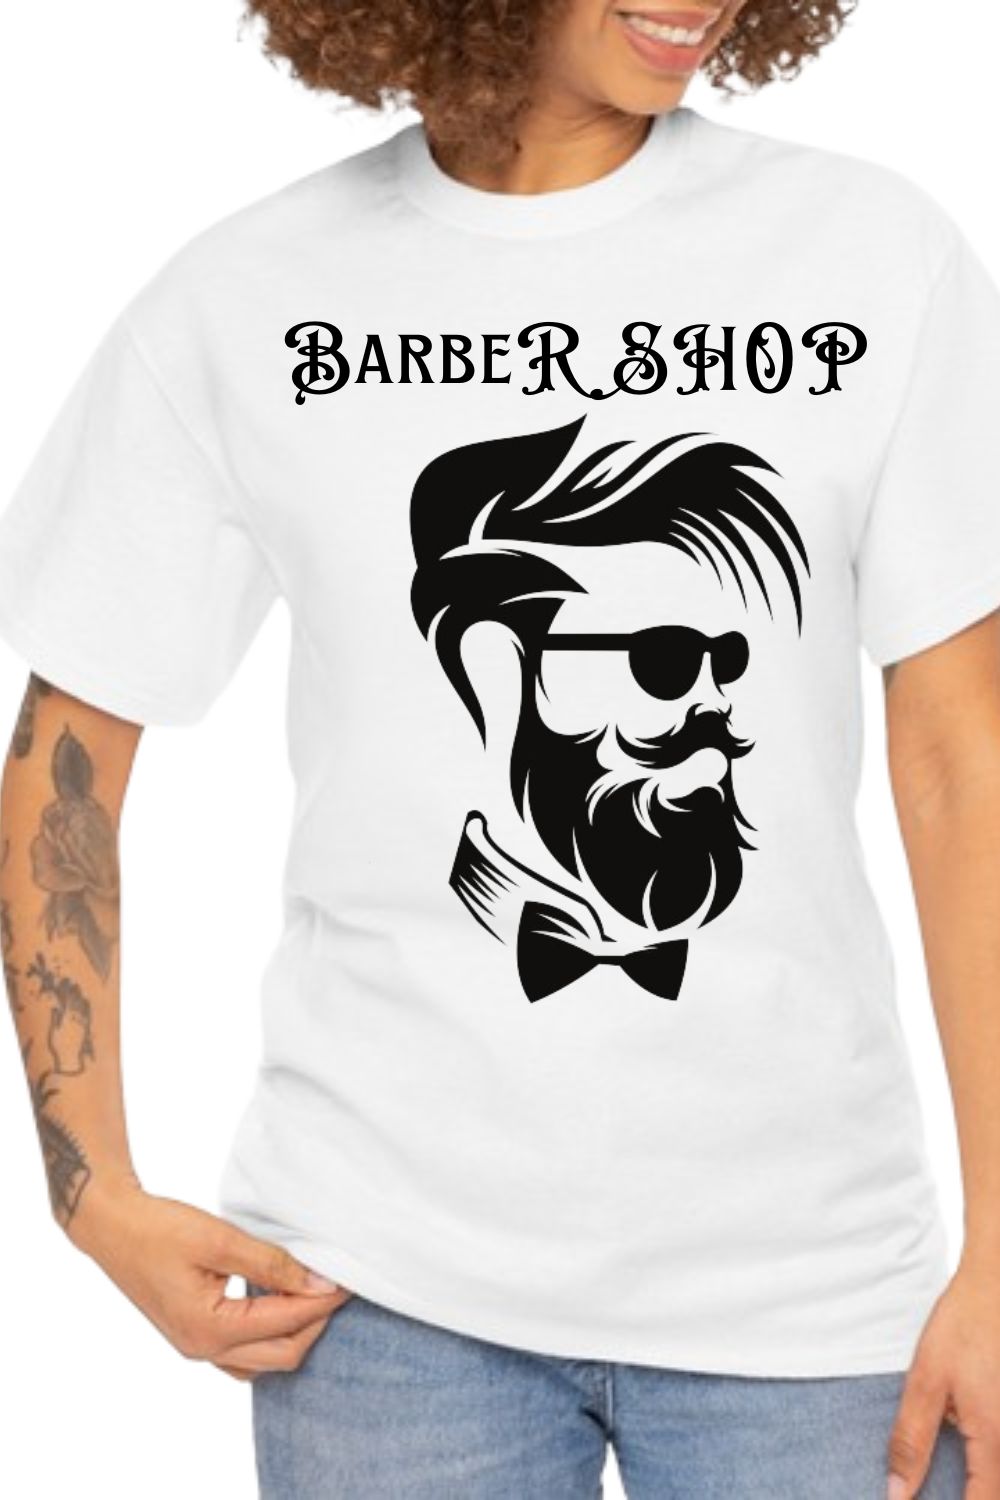 Barber SHOP design pinterest preview image.